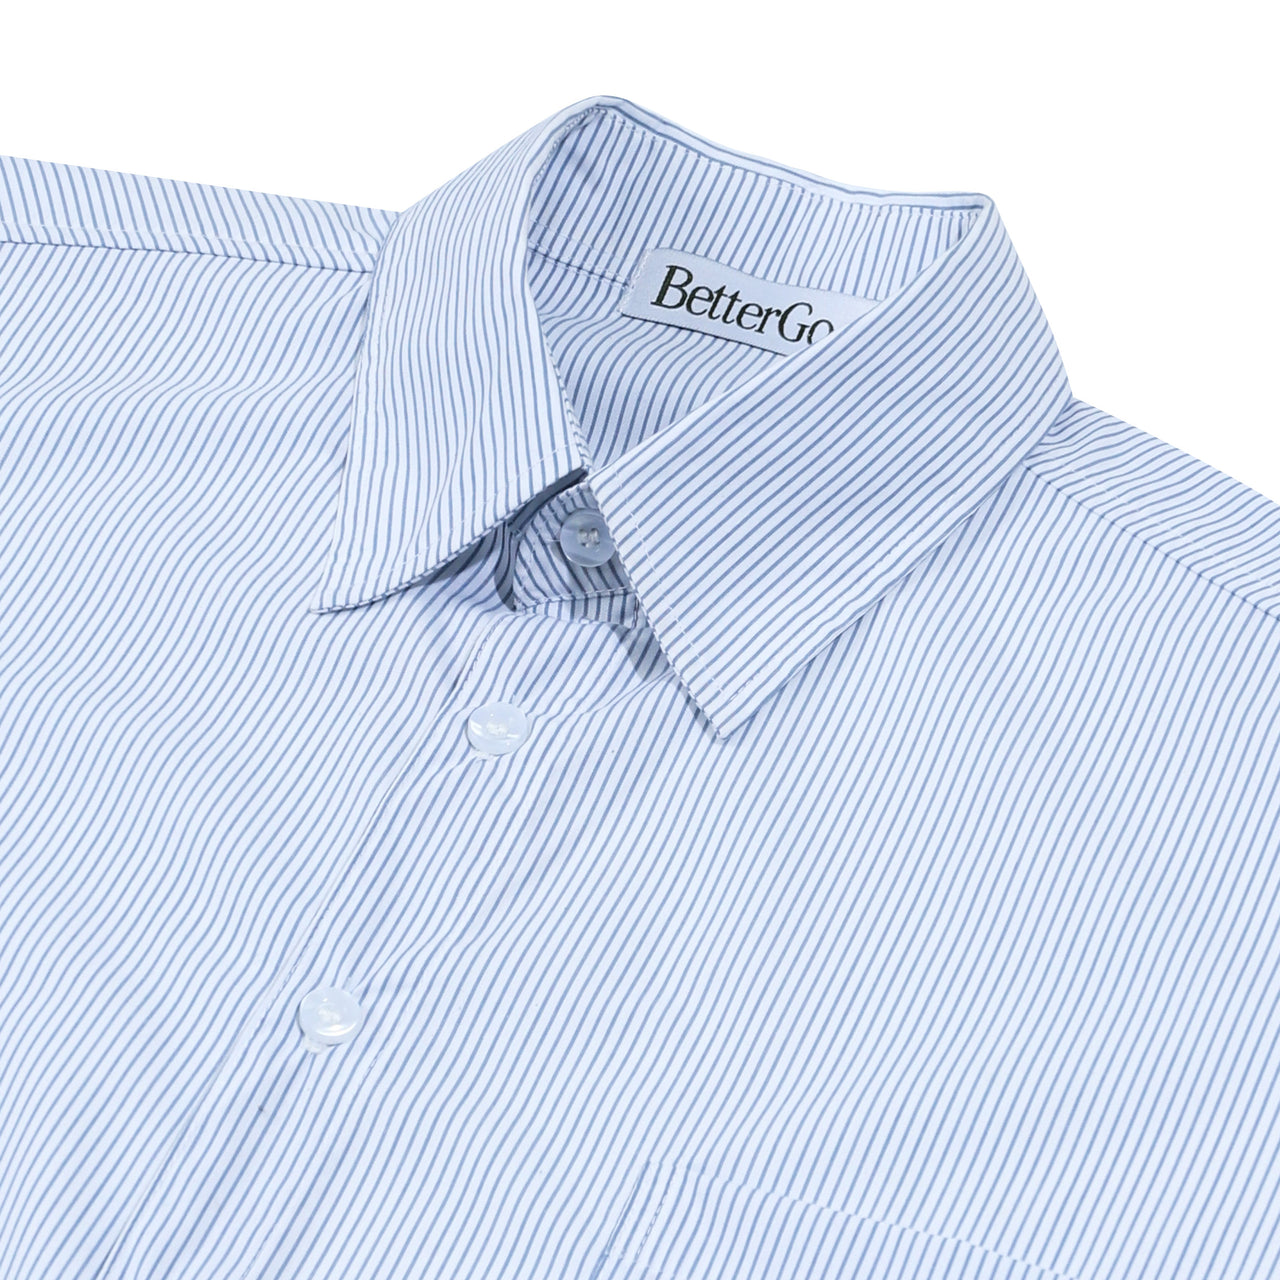 Better Goods - Lay Oxford Shirt Blue